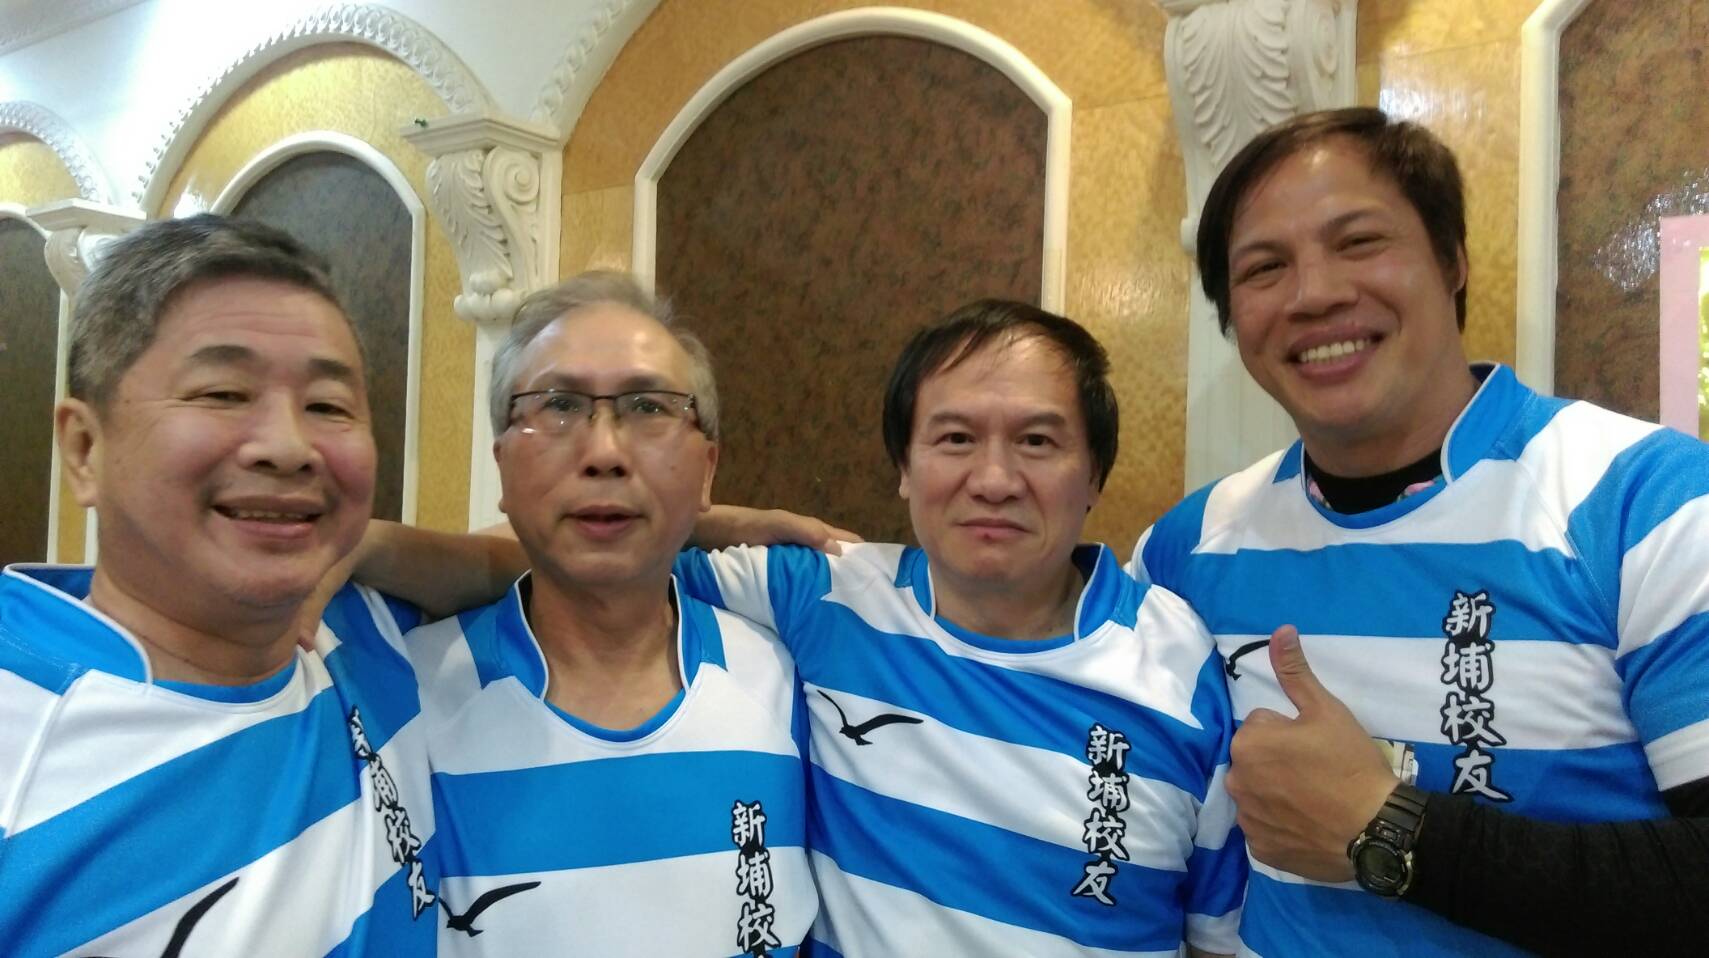  曾任新埔橄欖球隊隊長的張譽興學長（右二）將象徵隊長的1號球衣傳給了現任教練吳志賢（右一）穿上，期盼將榮耀與精神代代的傳承
